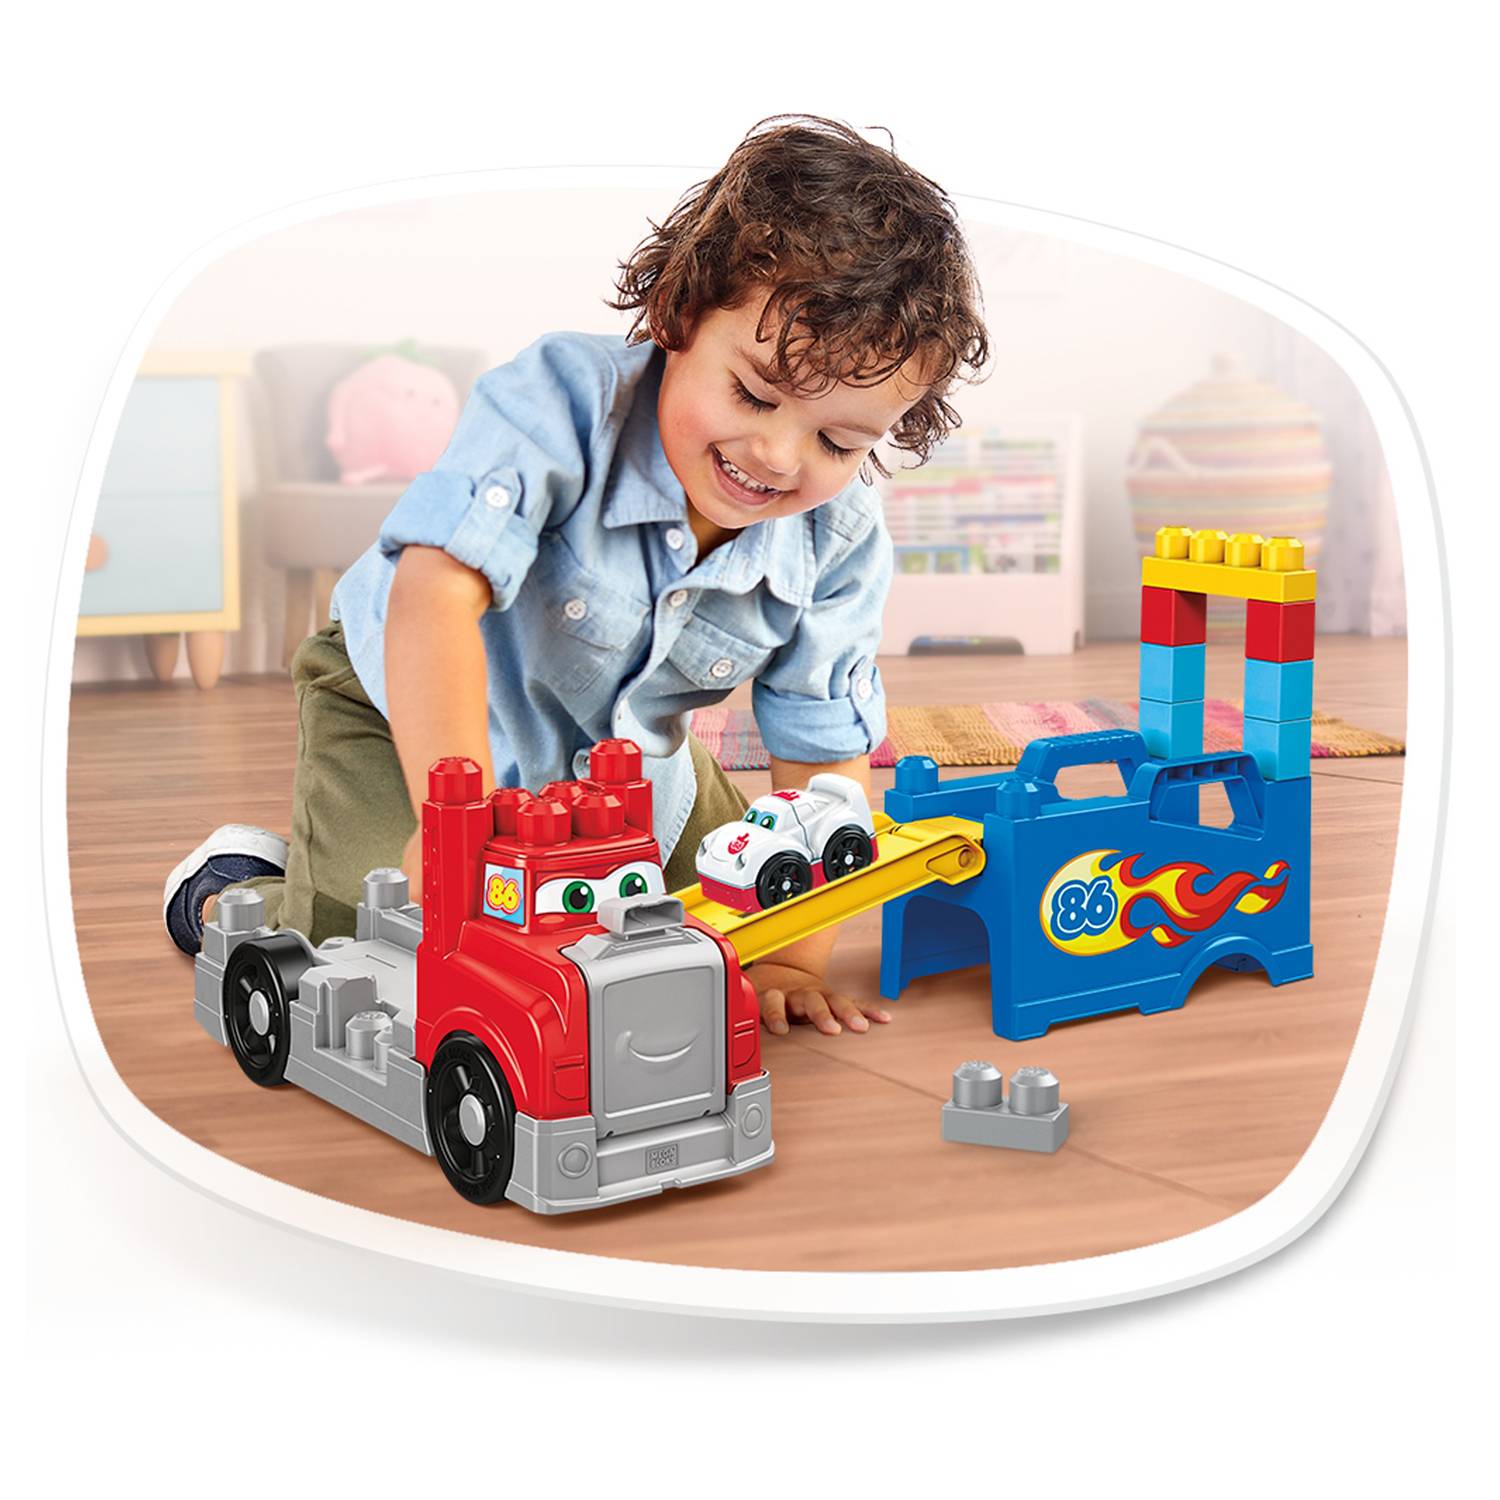 regalo para niños +1 año Mattel GYH94 Mega Bloks Coche para construir Vehículo de juguete de bloques de construcción